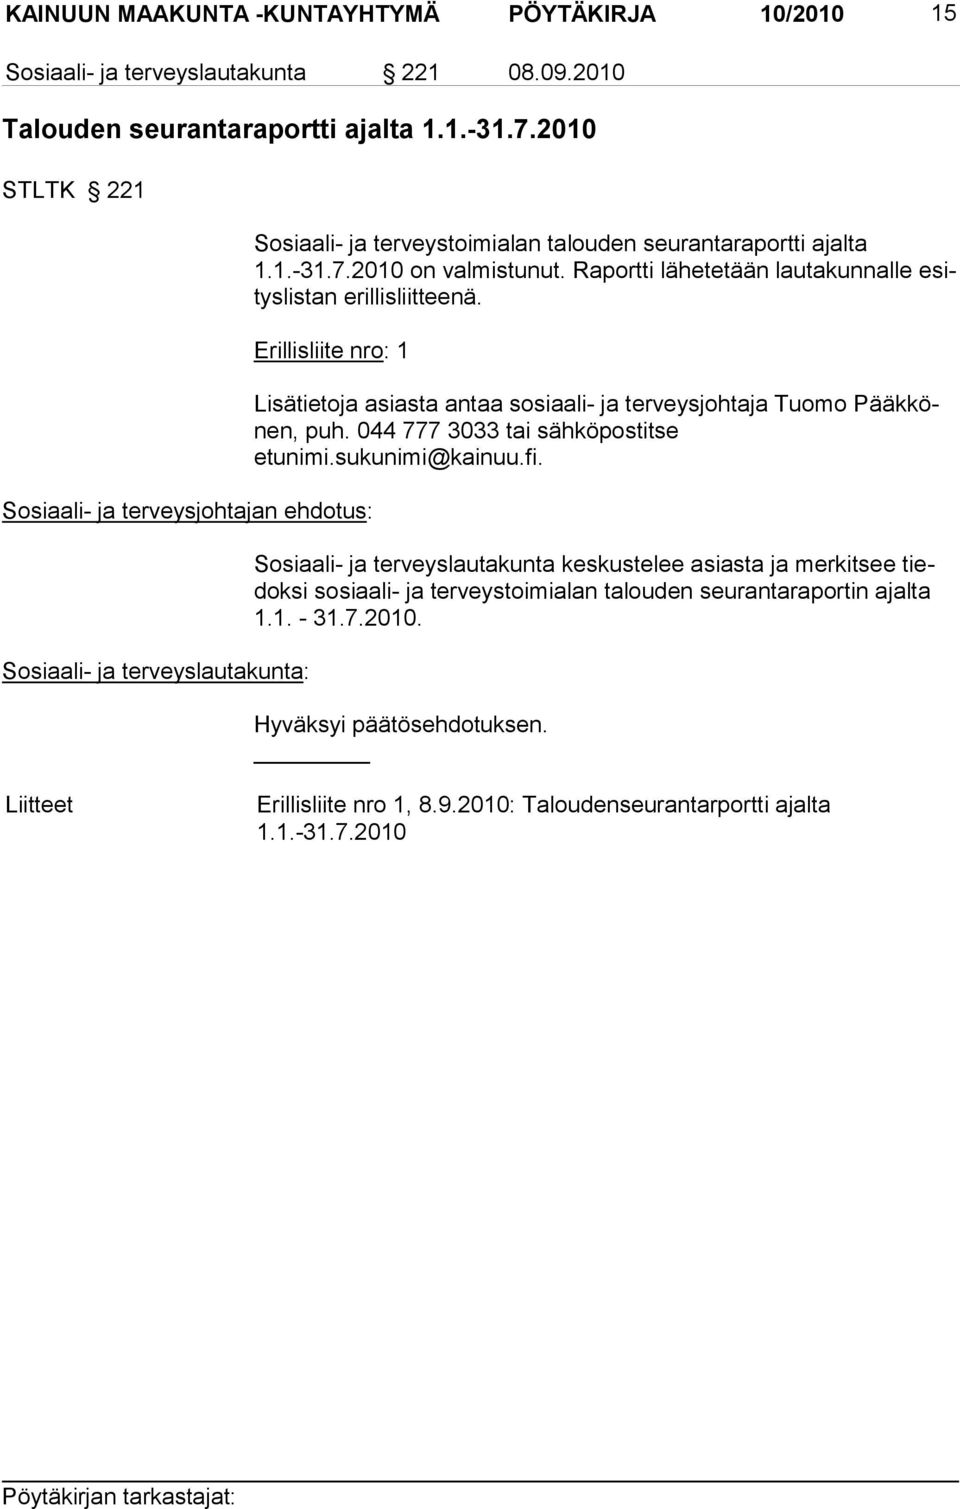 Erillisliite nro: 1 Lisätietoja asiasta antaa sosiaali- ja terveys johtaja Tuomo Pääkkönen, puh. 044 777 3033 tai sähköpostitse etunimi.sukunimi@kainuu.fi.